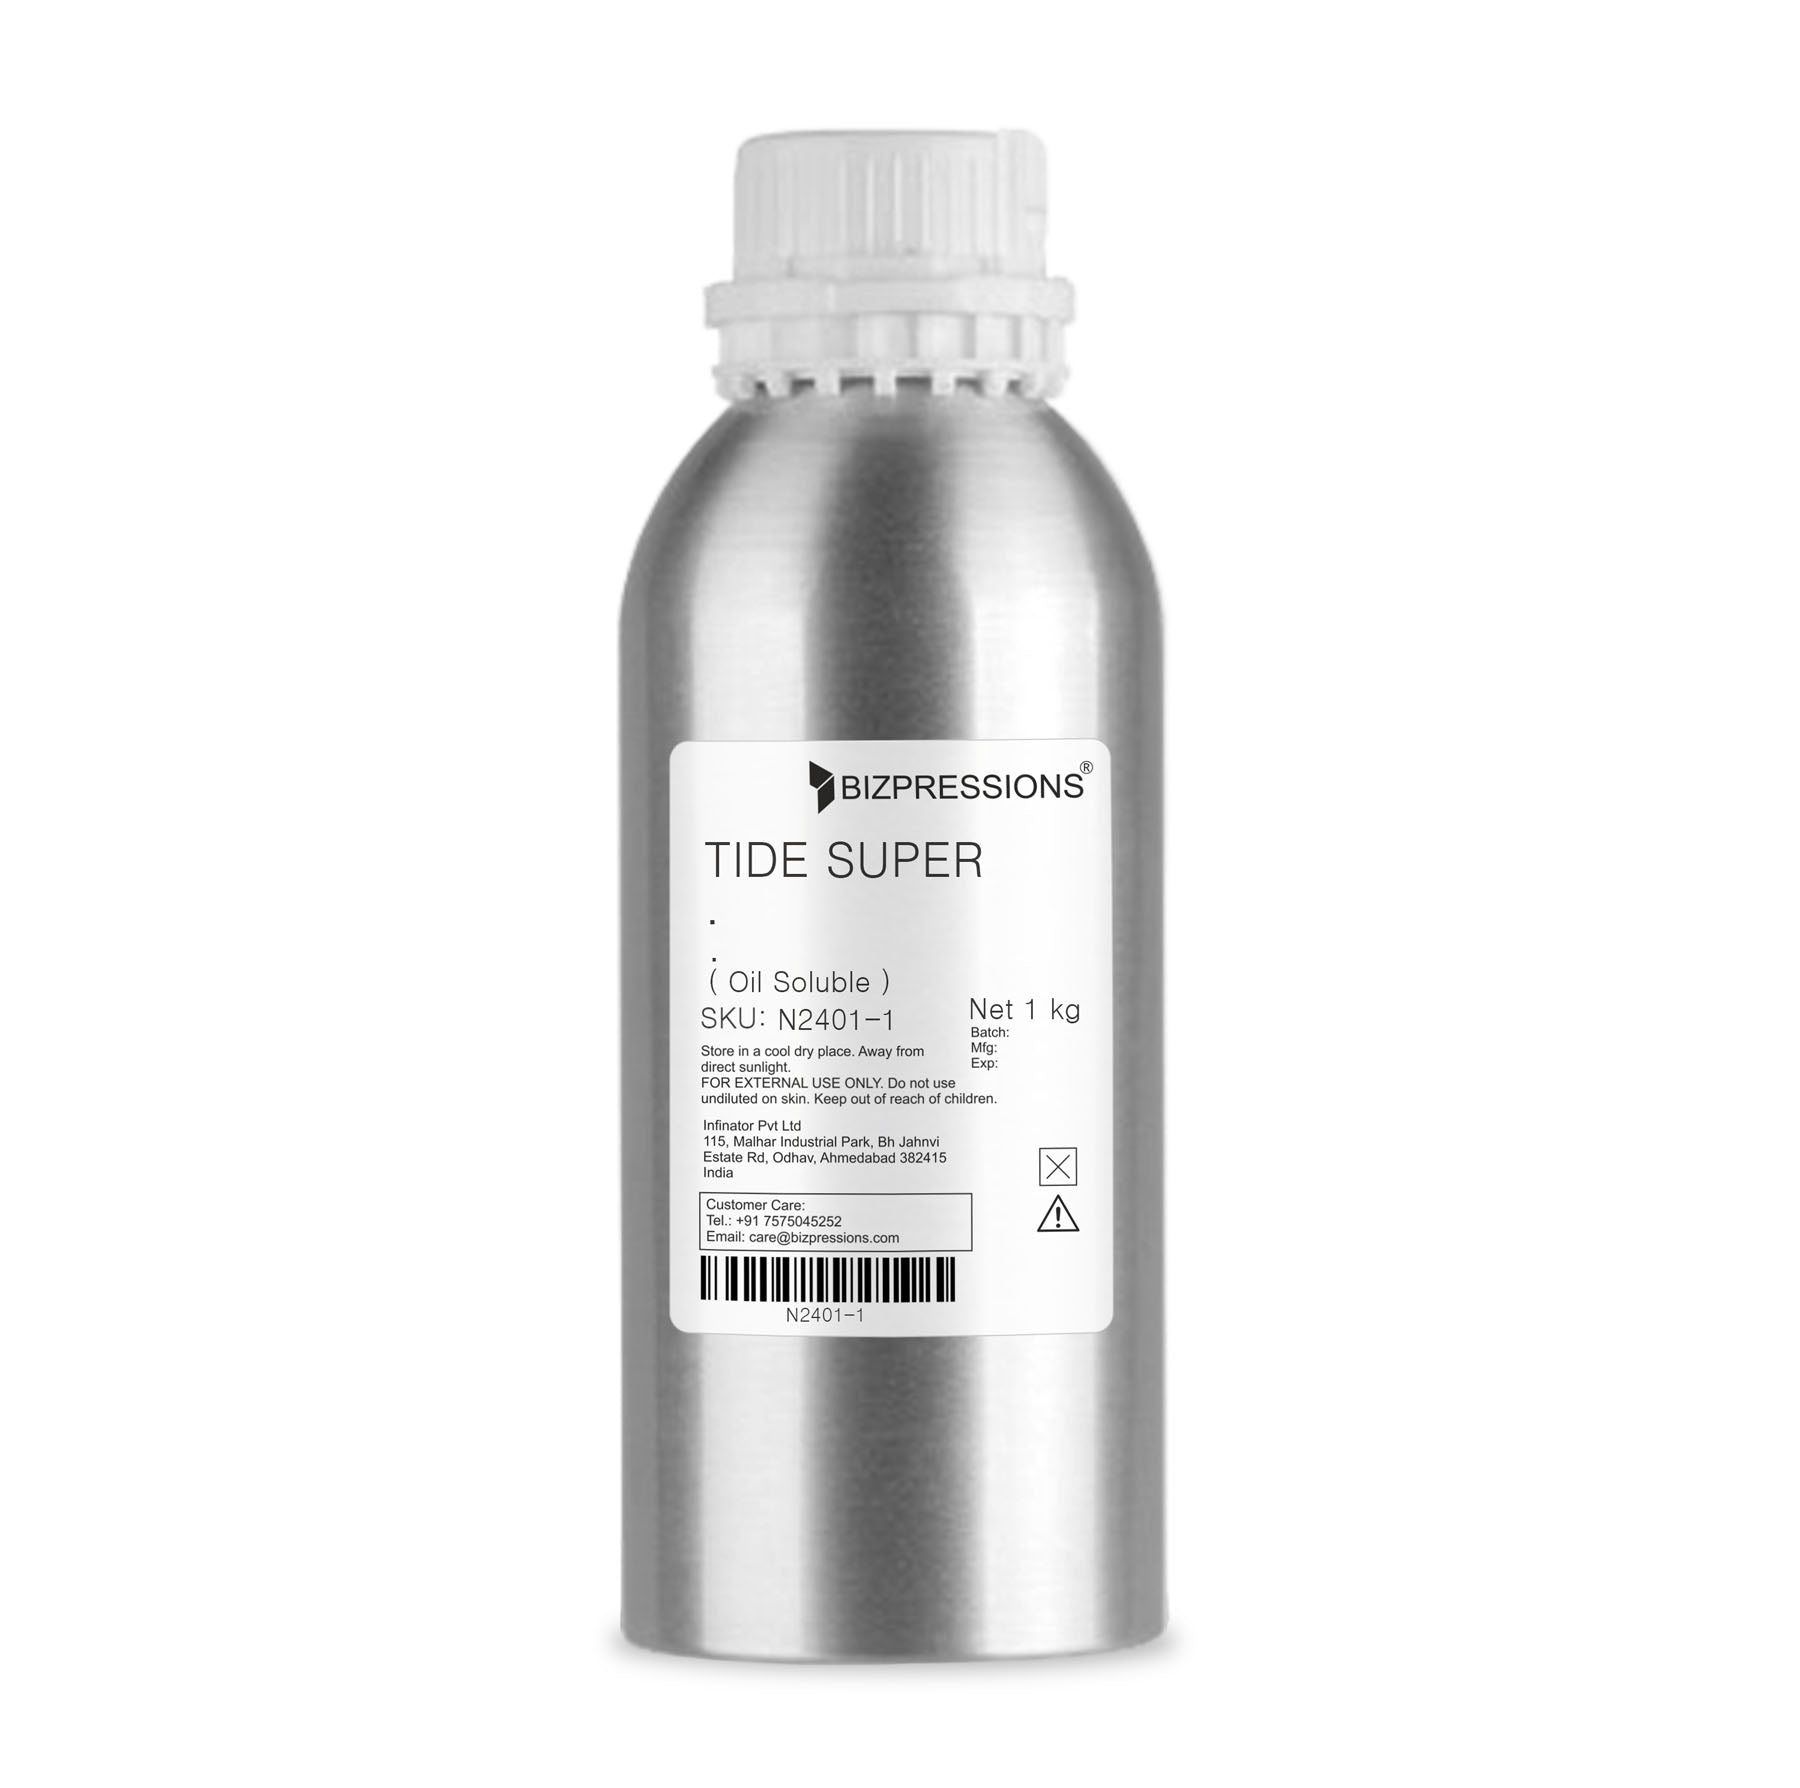 TIDE SUPER - Fragrance ( Oil Soluble ) - 1 kg